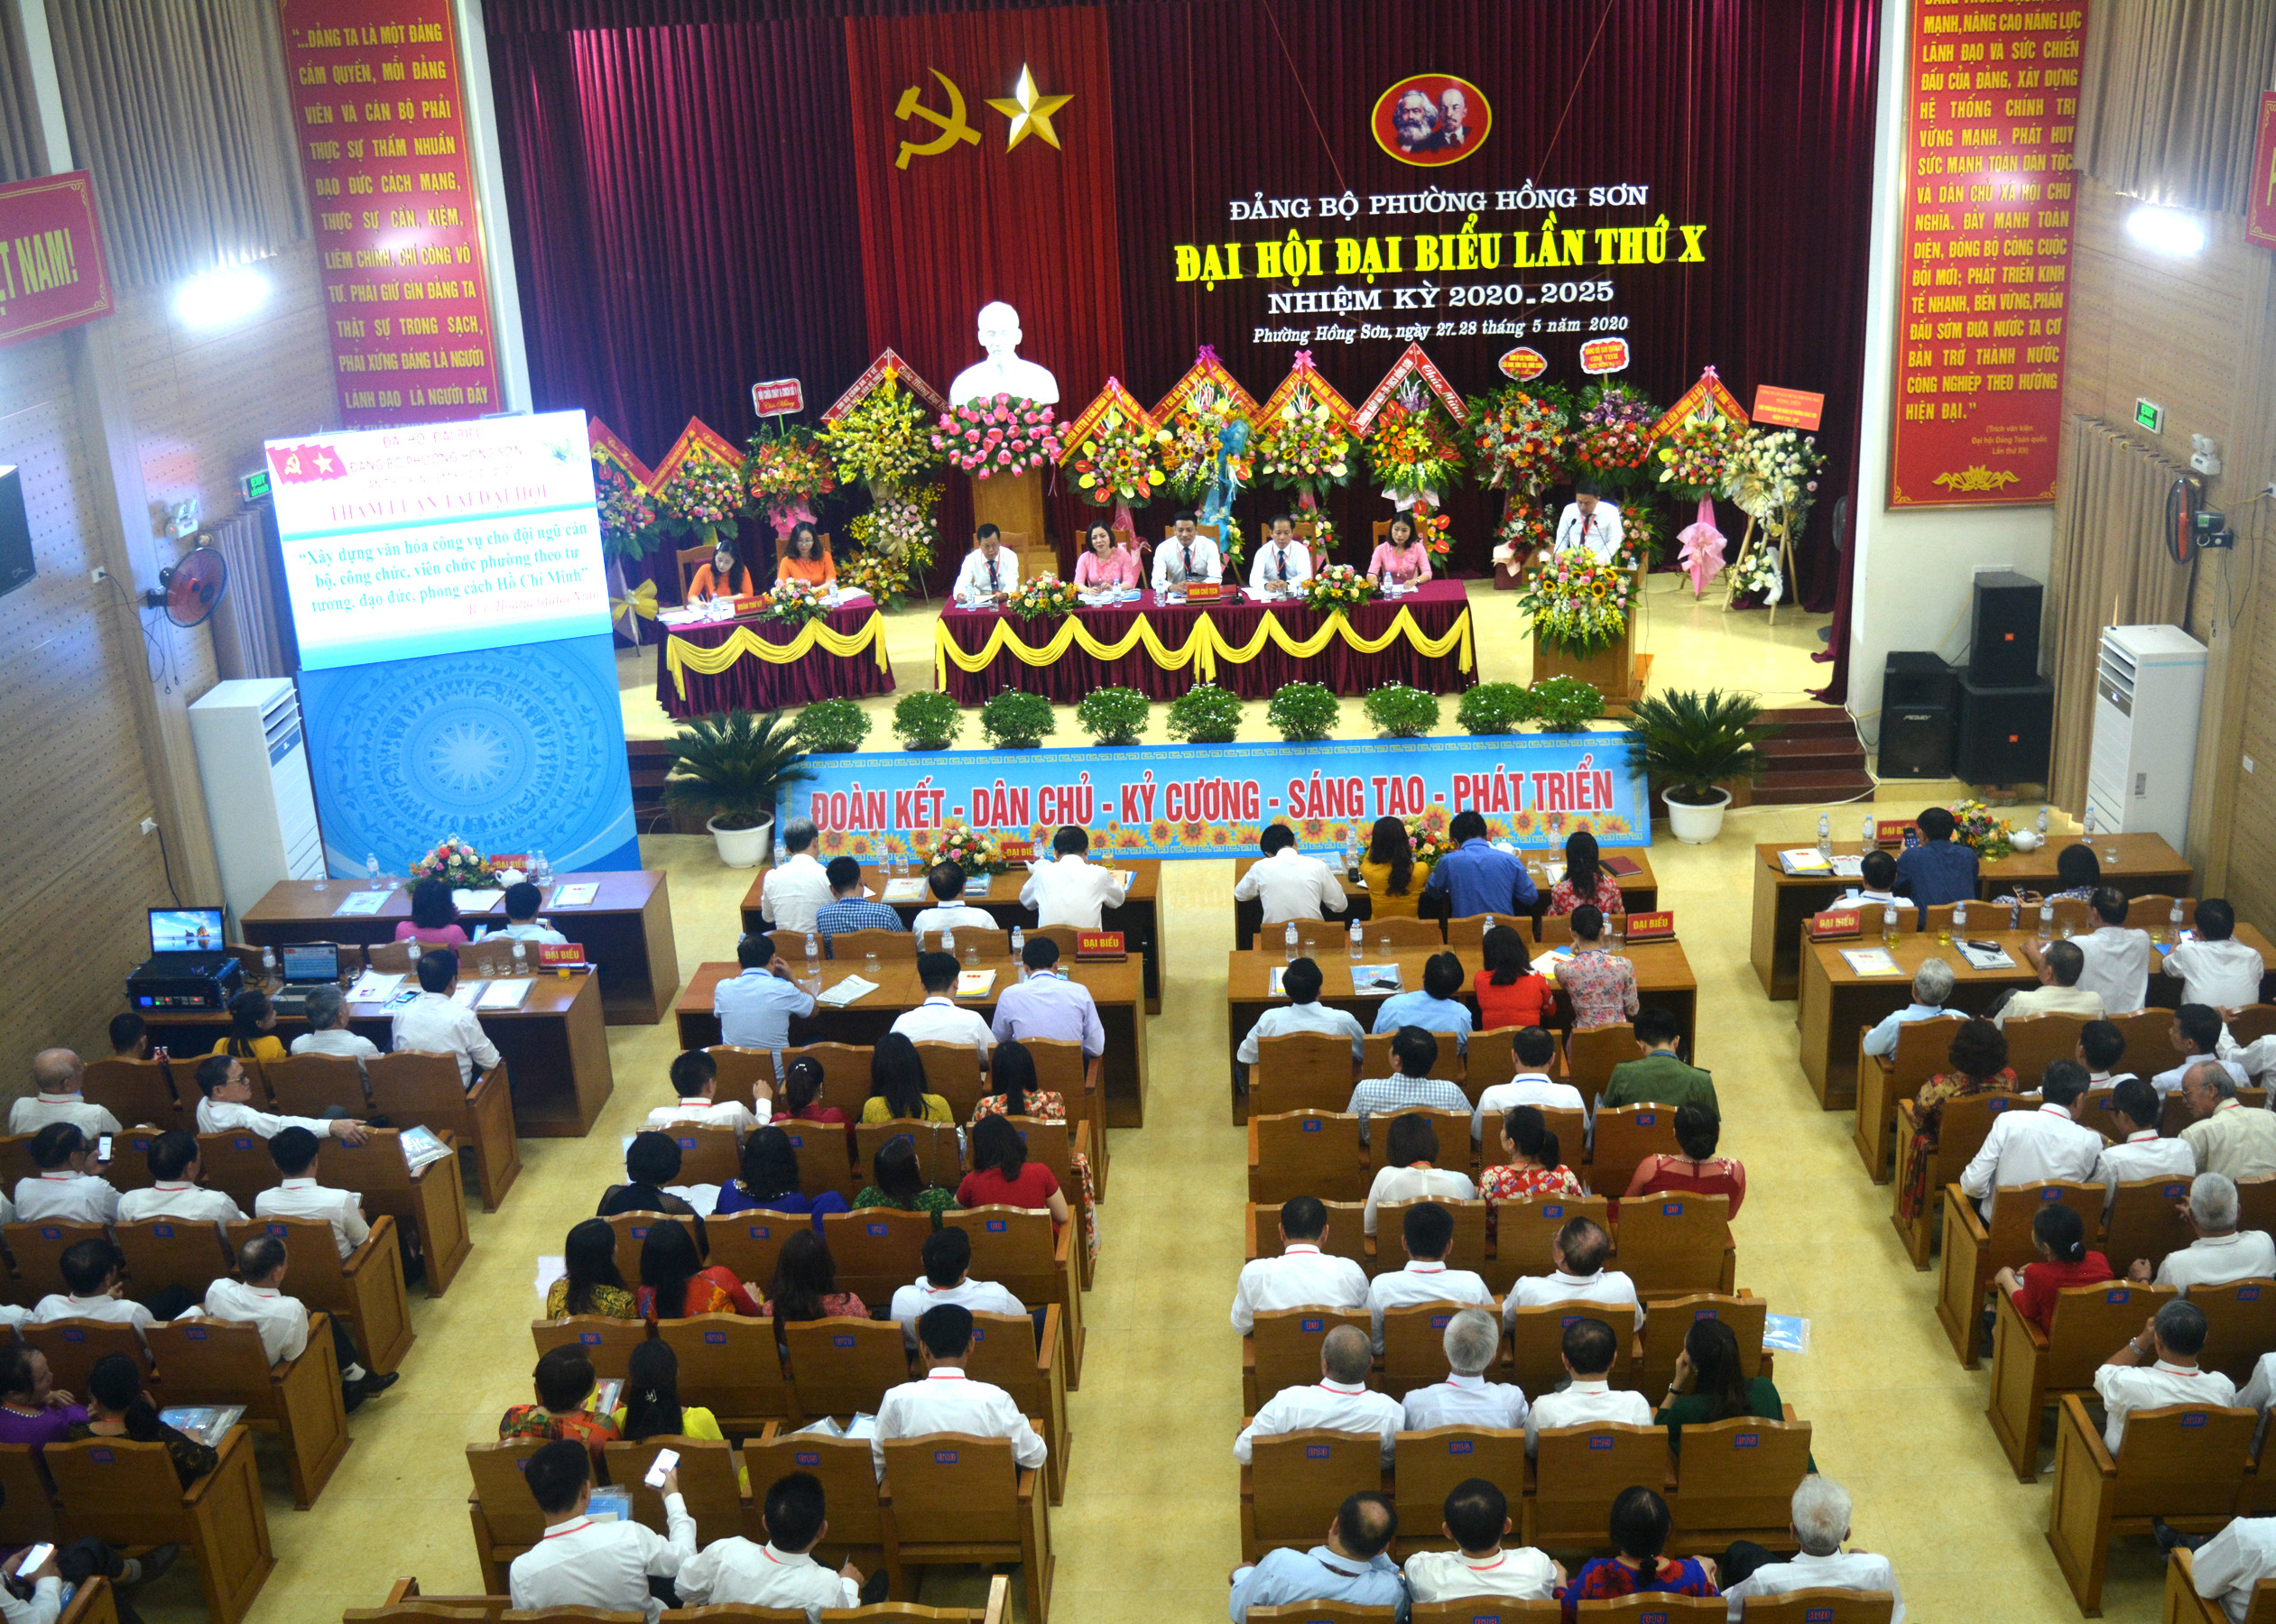 Về dự đại hội có các đồng chí Nguyễn Văn Lư, Phó Bí thư thành ủy Vinh, Chủ tịch HĐND thành phố và lãnh đạo một số ban ngành thành phố Vinh và 160 đại biểu đại diện cho đảng viên trong toàn phường.